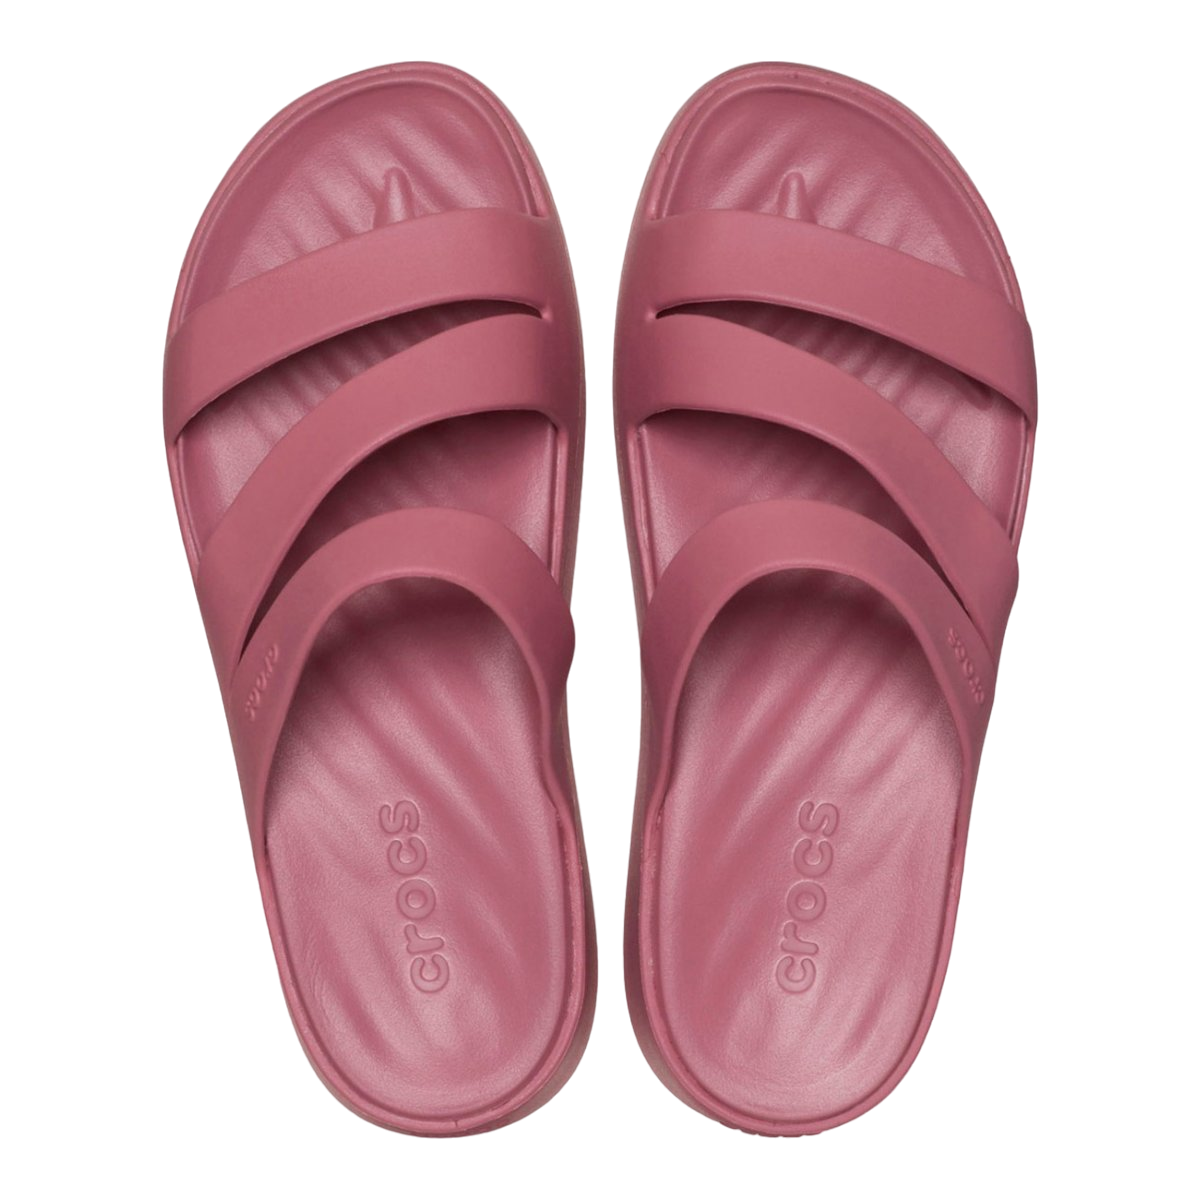 Crocs Fuga Strappy sandal slipper for women 209587-5PG cassis